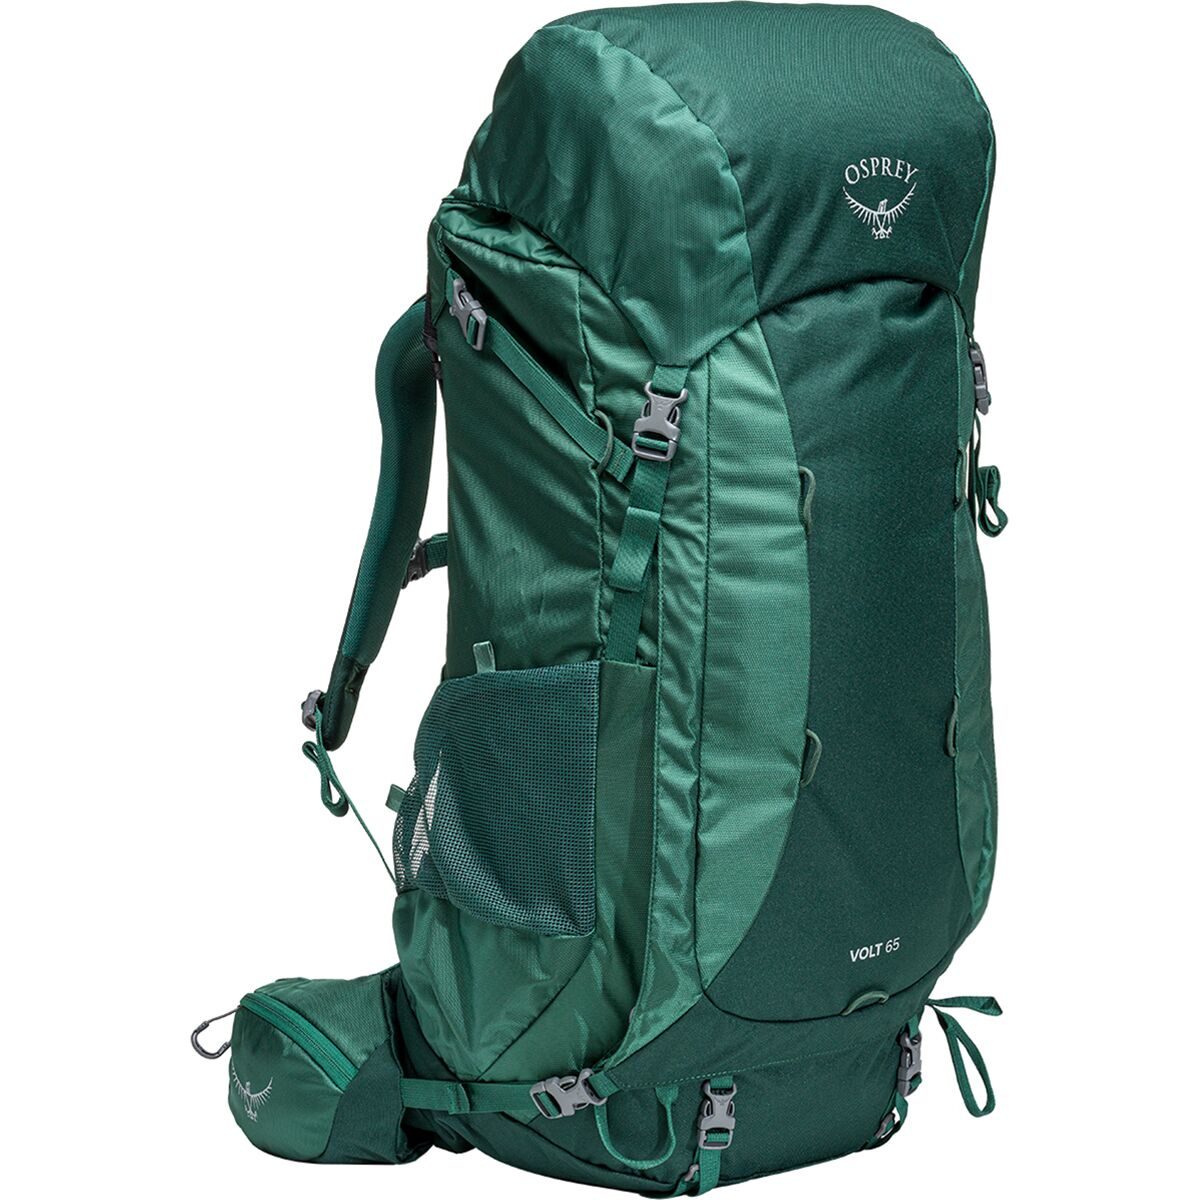 Osprey Packs Volt 65 Backpack